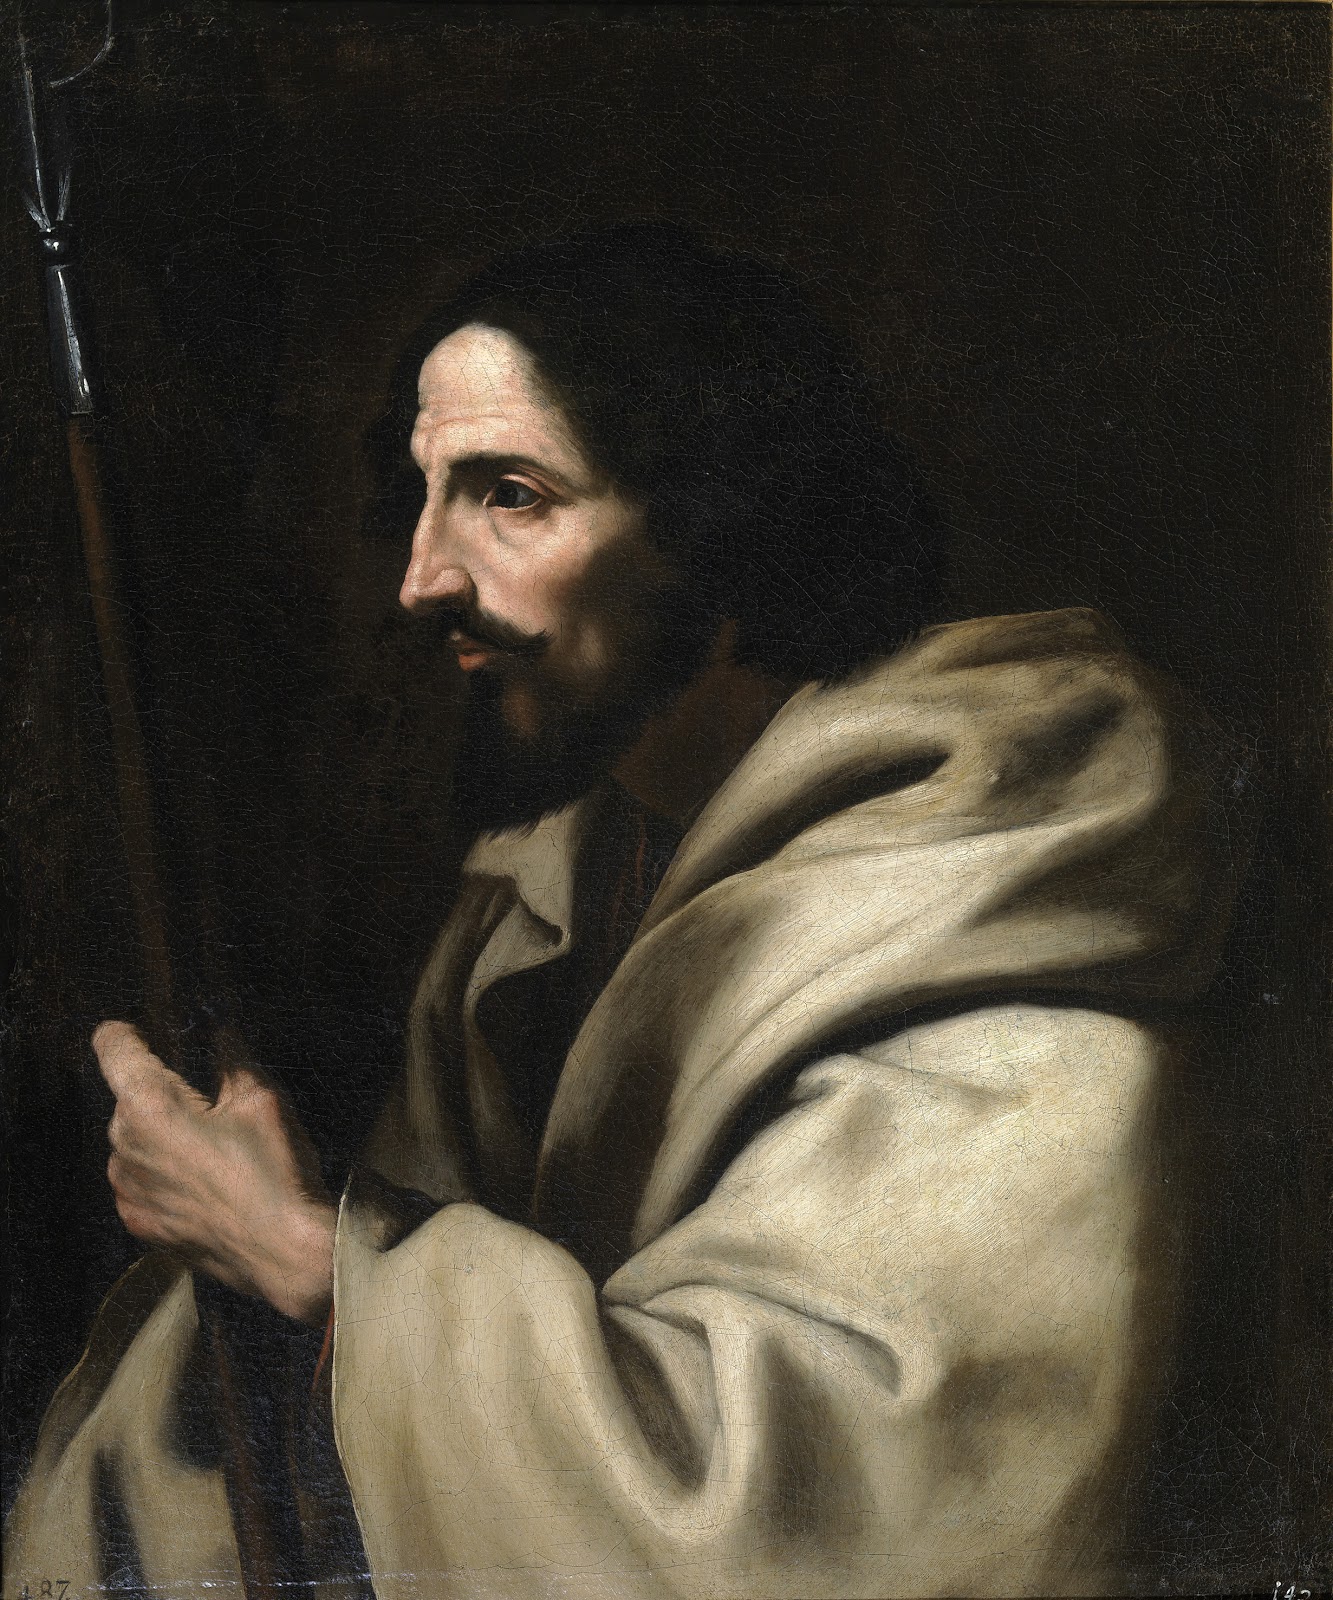 Jusepe+de+Ribera-1591-1652 (95).jpg